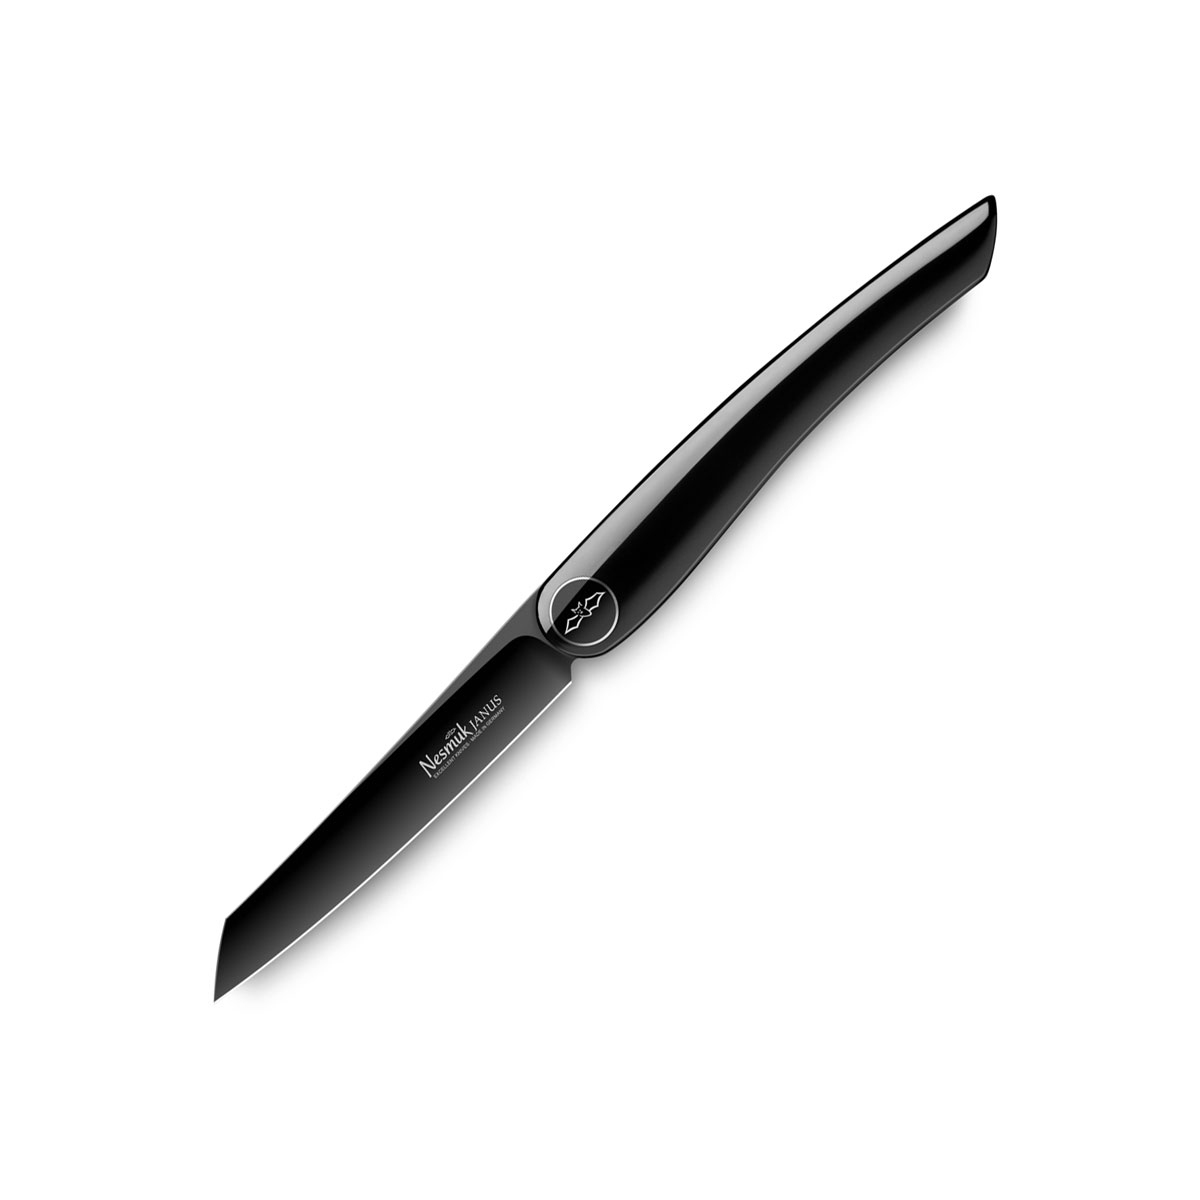 Nesmuk Janus Folder 8,9 cm - Niobstahl mit DLC-Beschichtung - Griff Klavierlack schwarz